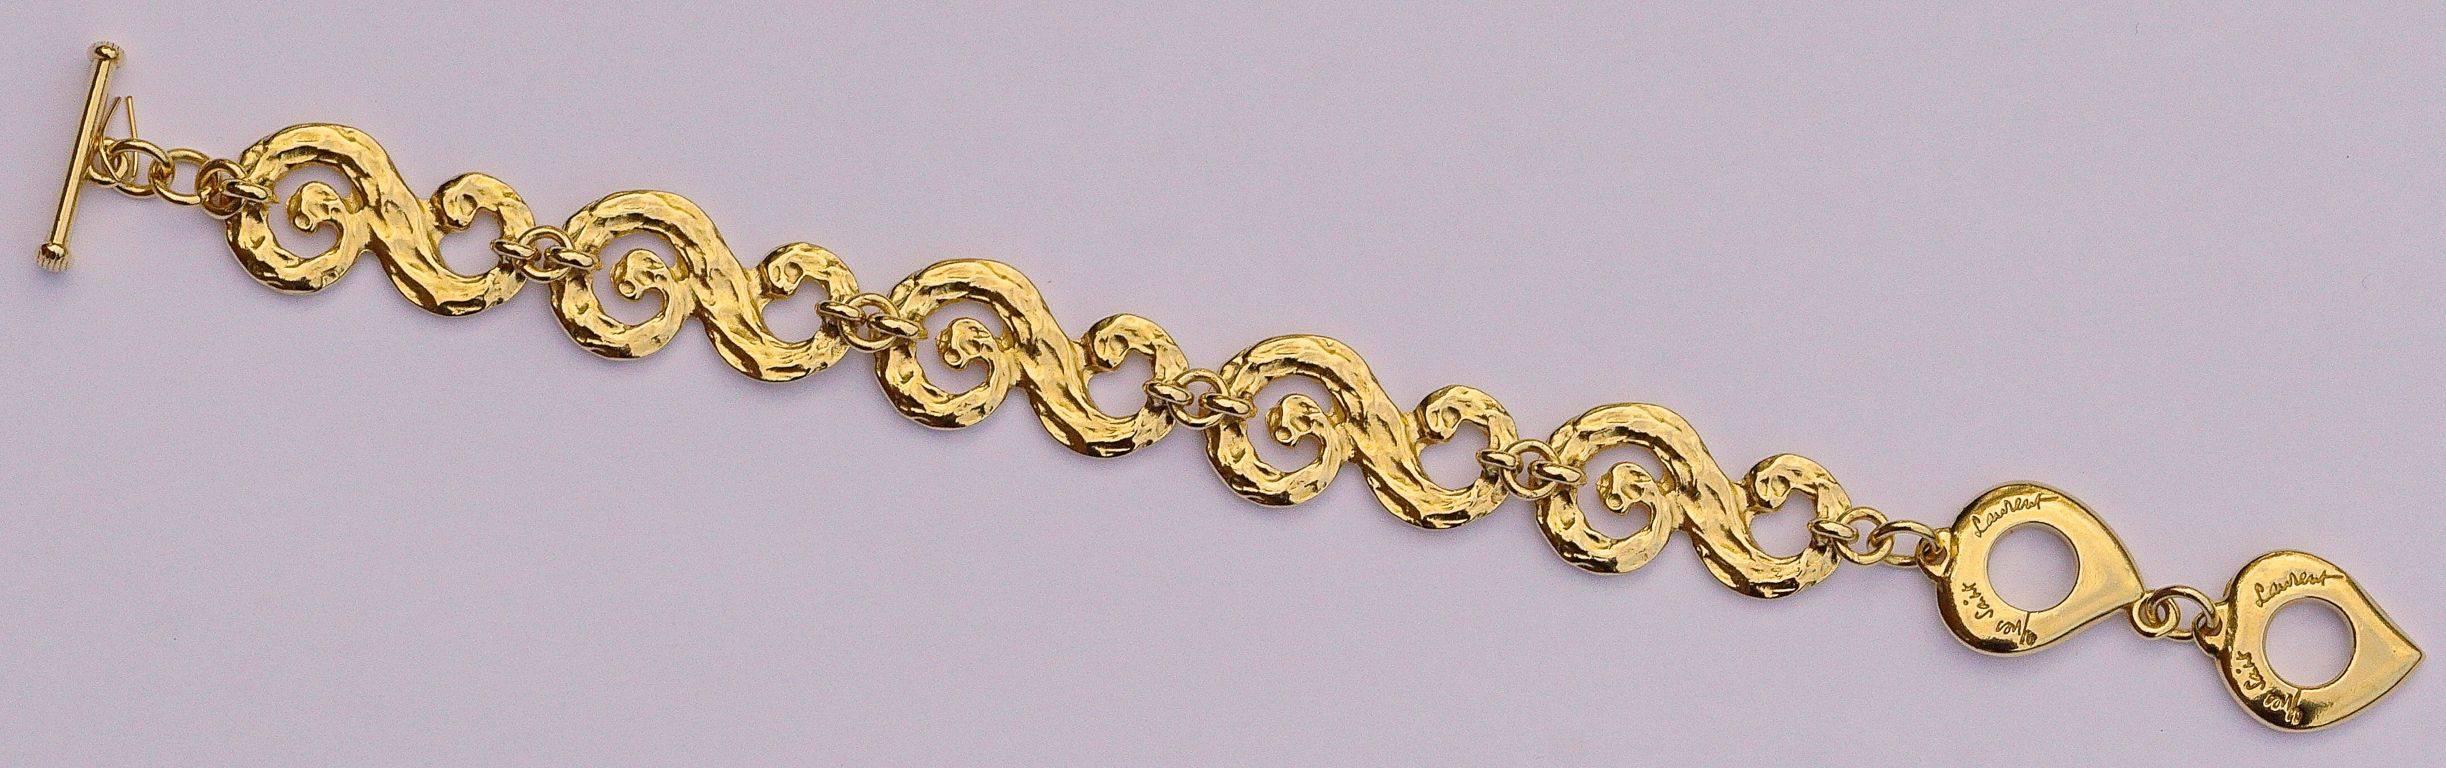 Yves Saint Laurent Swirl Link Chain Bracelet, 1980s  1